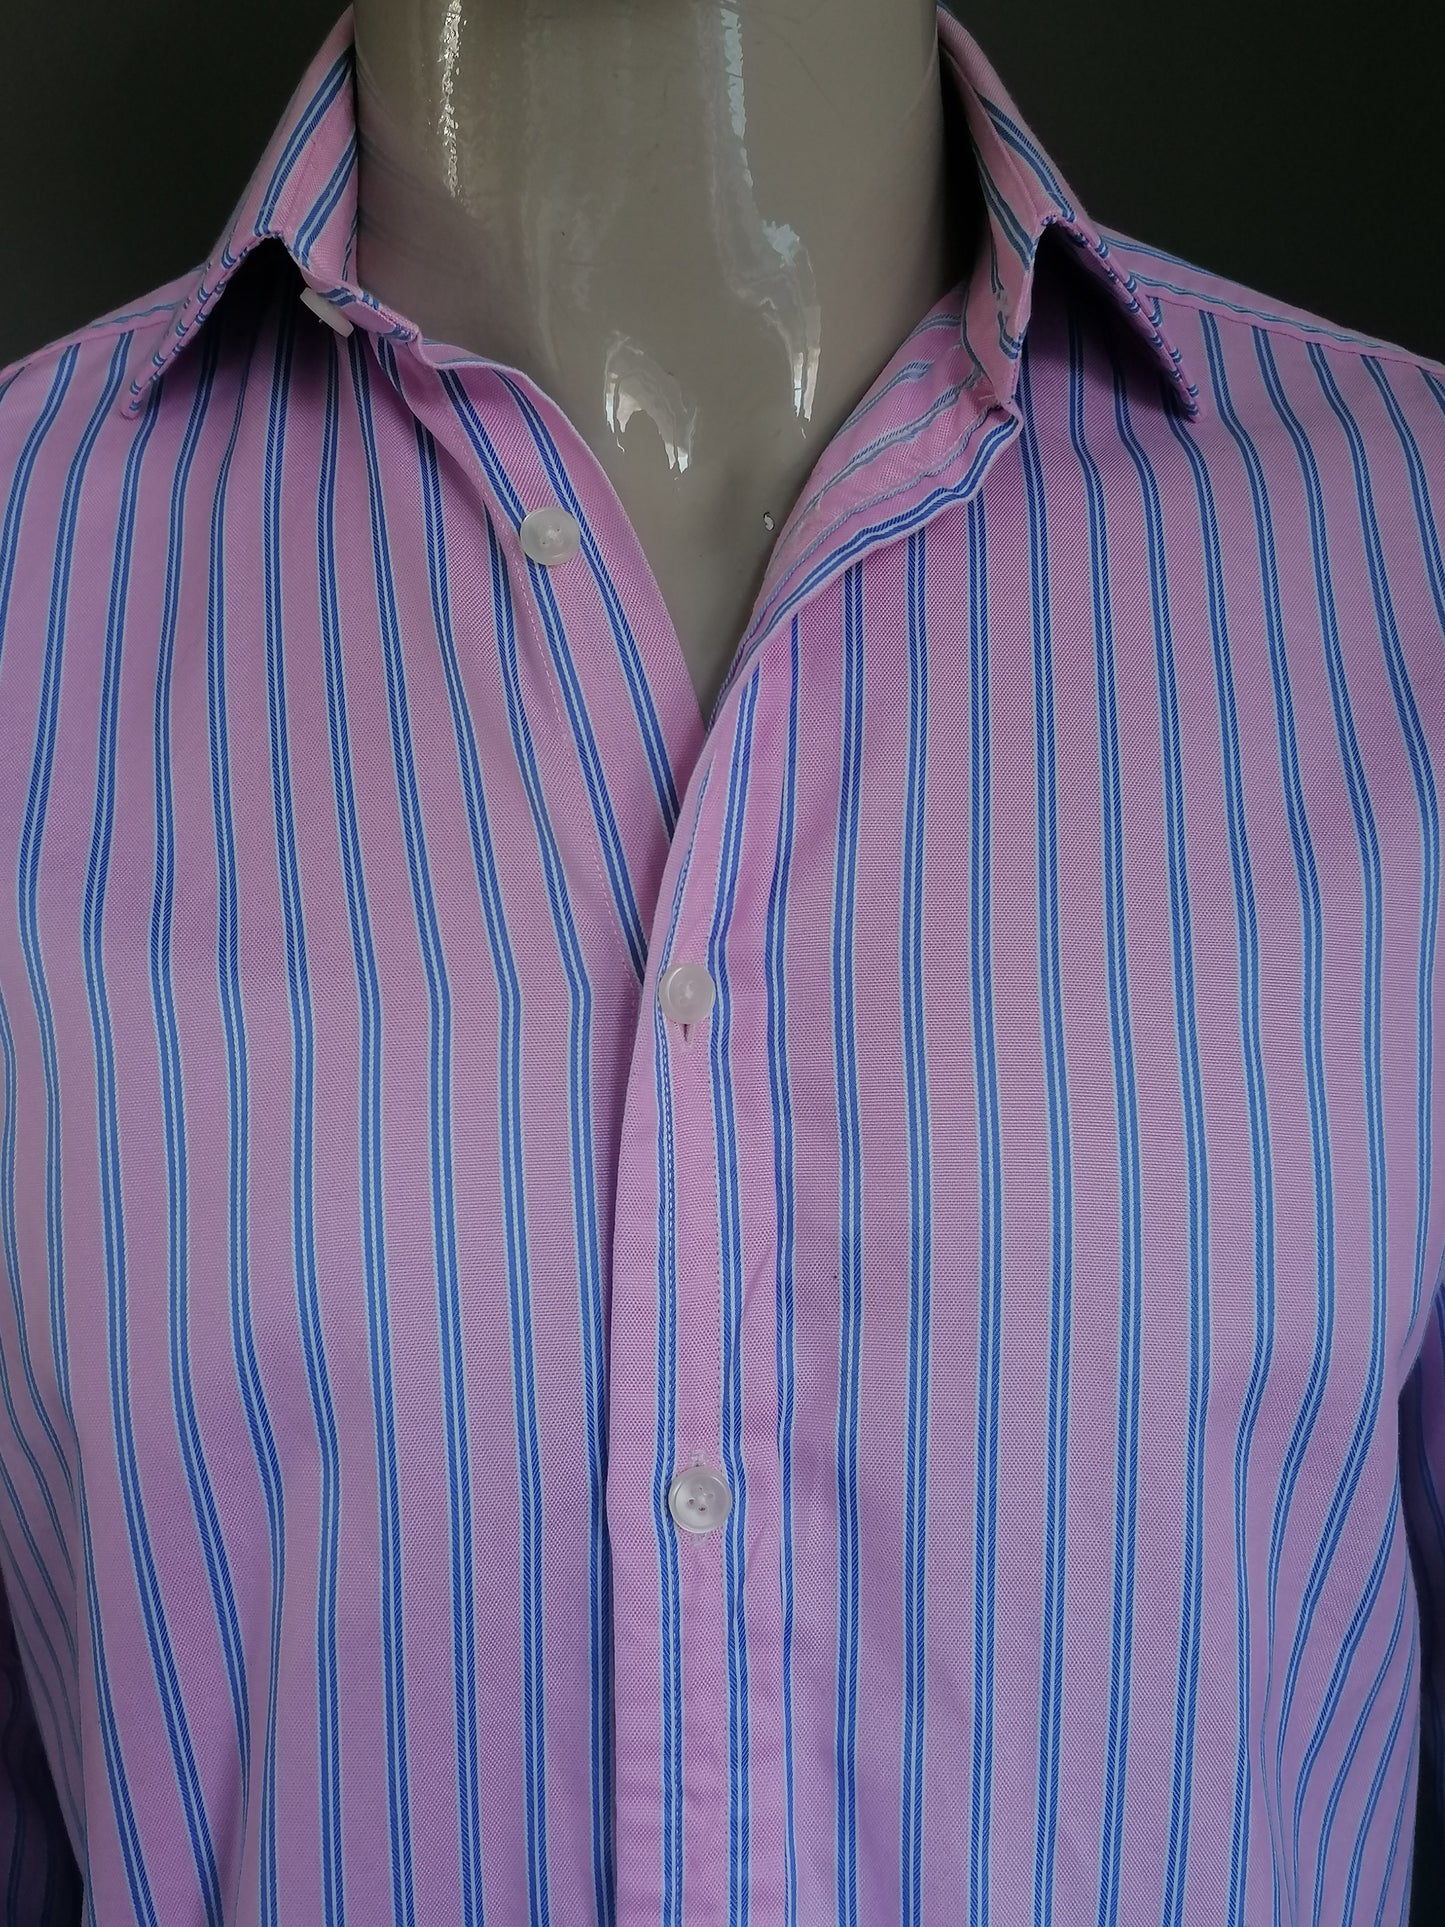 Thomas Pink overhemd. Roze Blauw Wit gestreept. Maat 38 / M. type Manchetknoop.